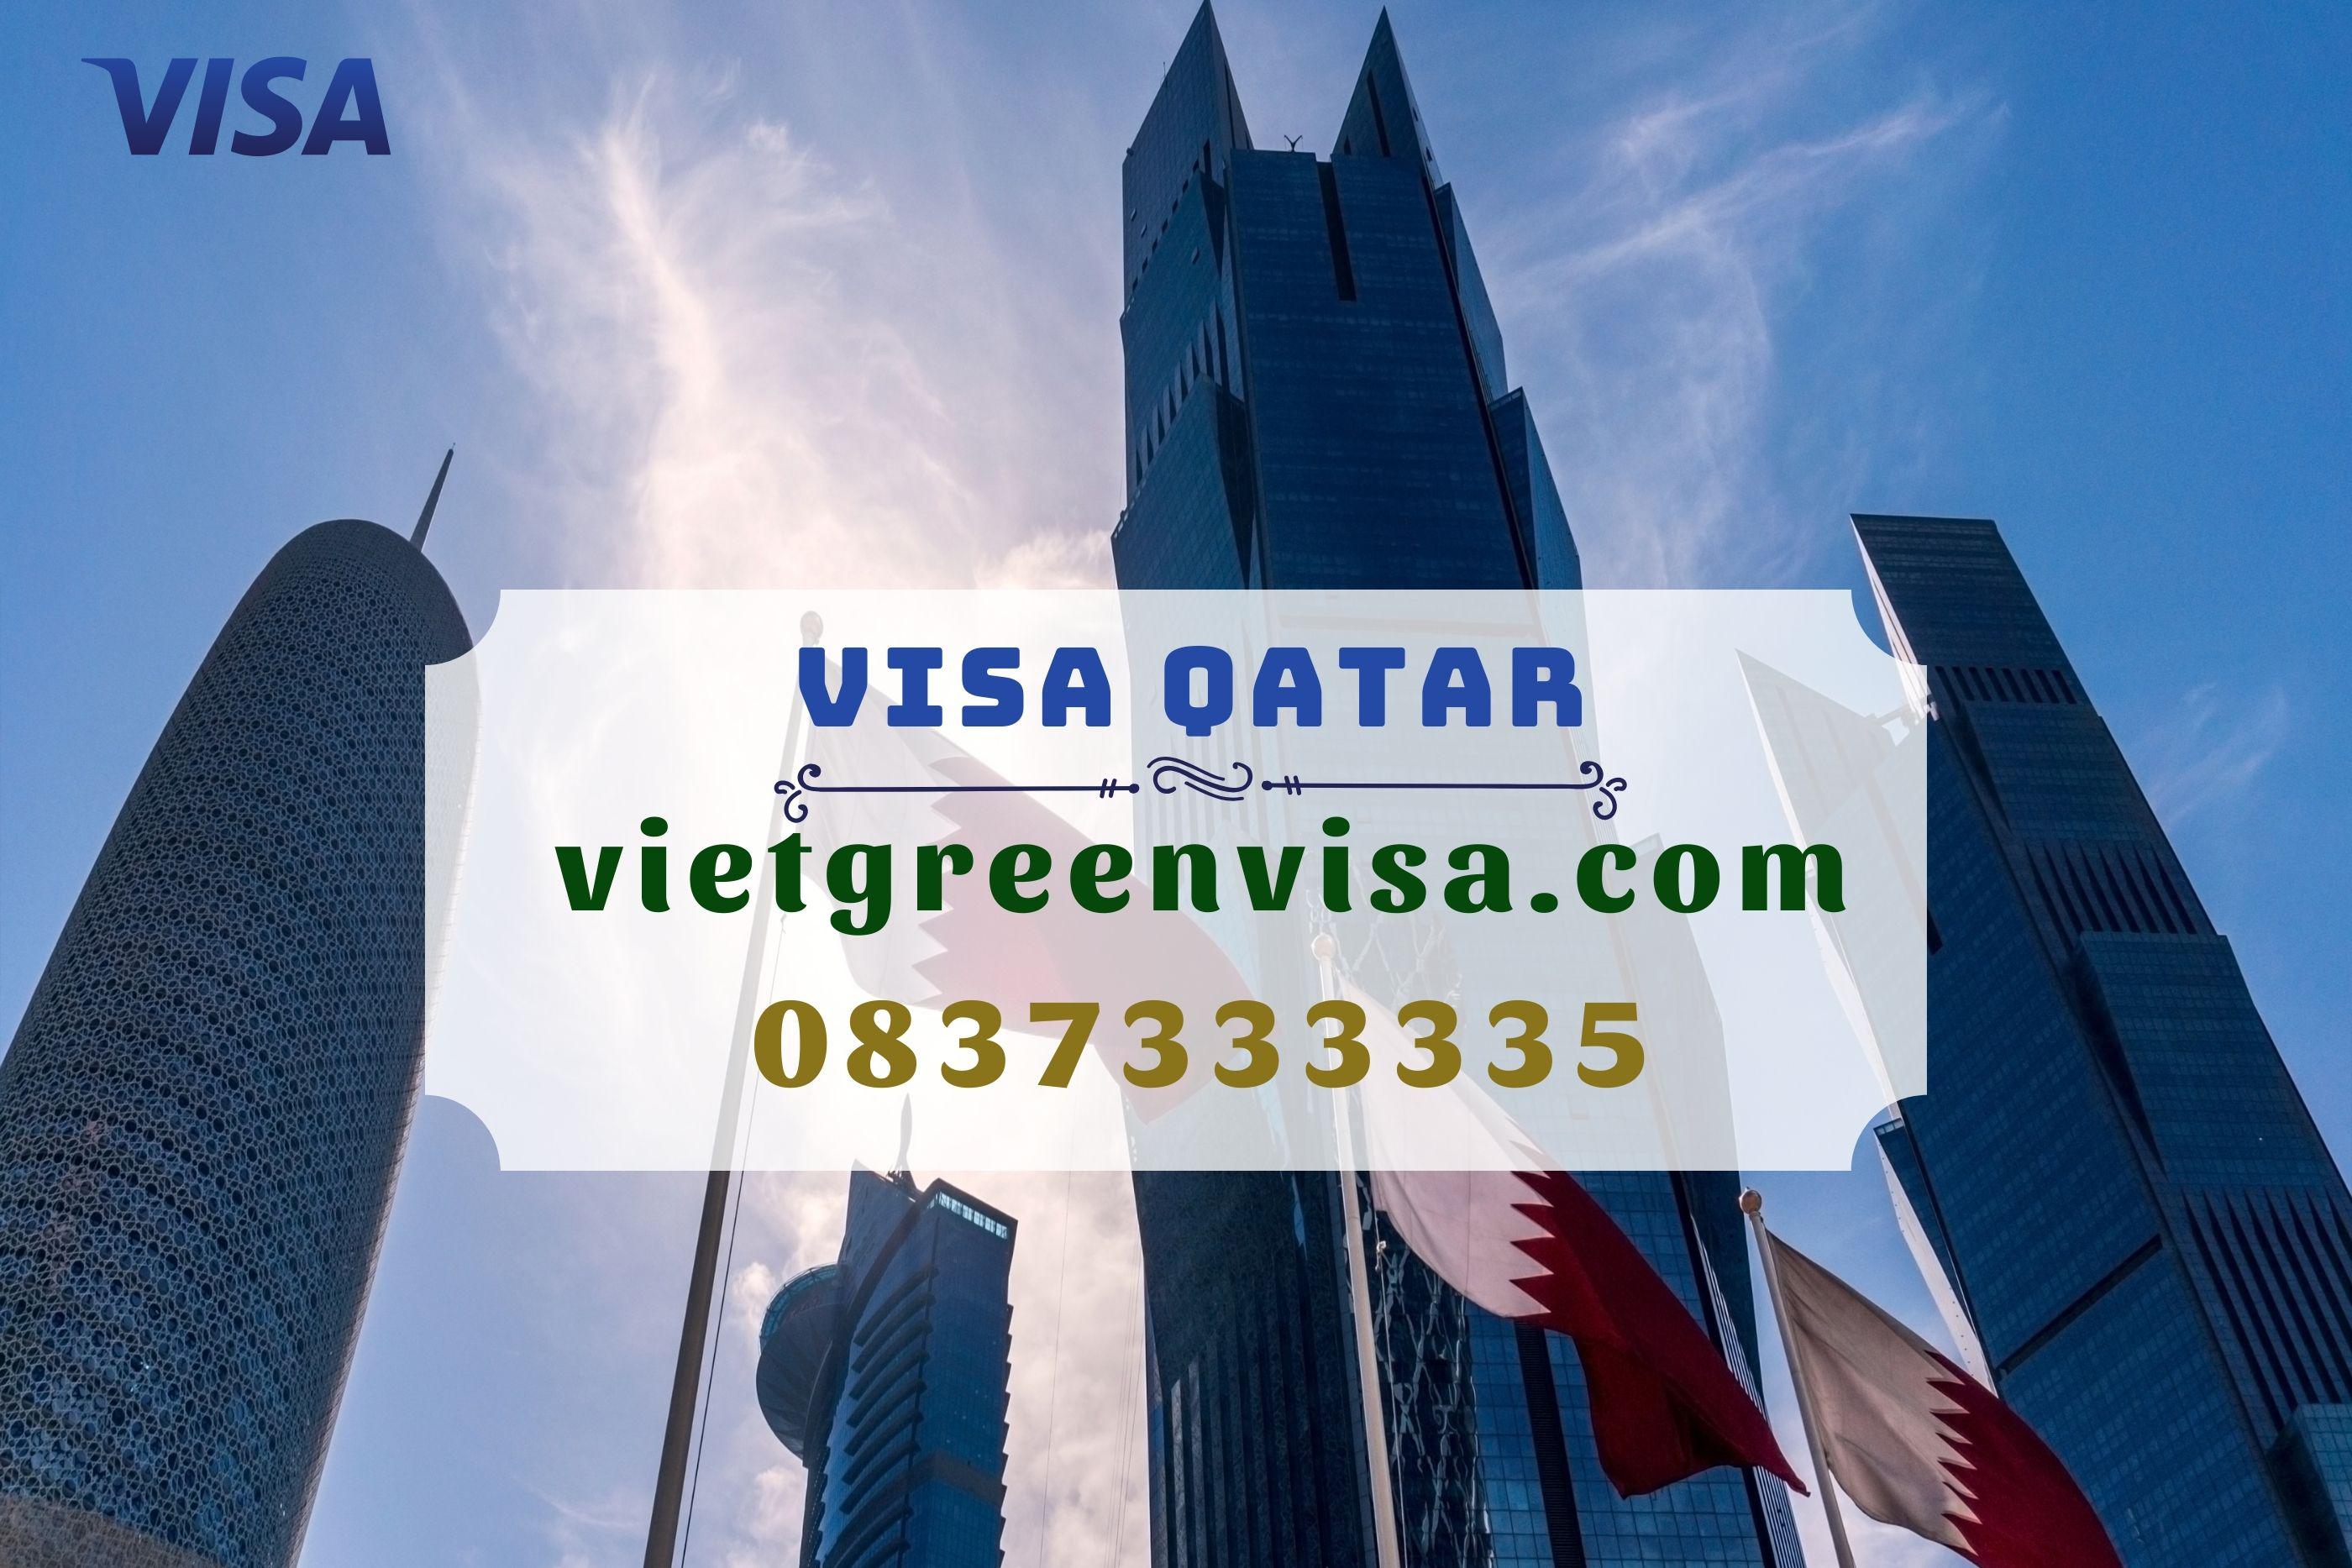 Hướng dẫn làm hồ sơ xin visa Qatar 